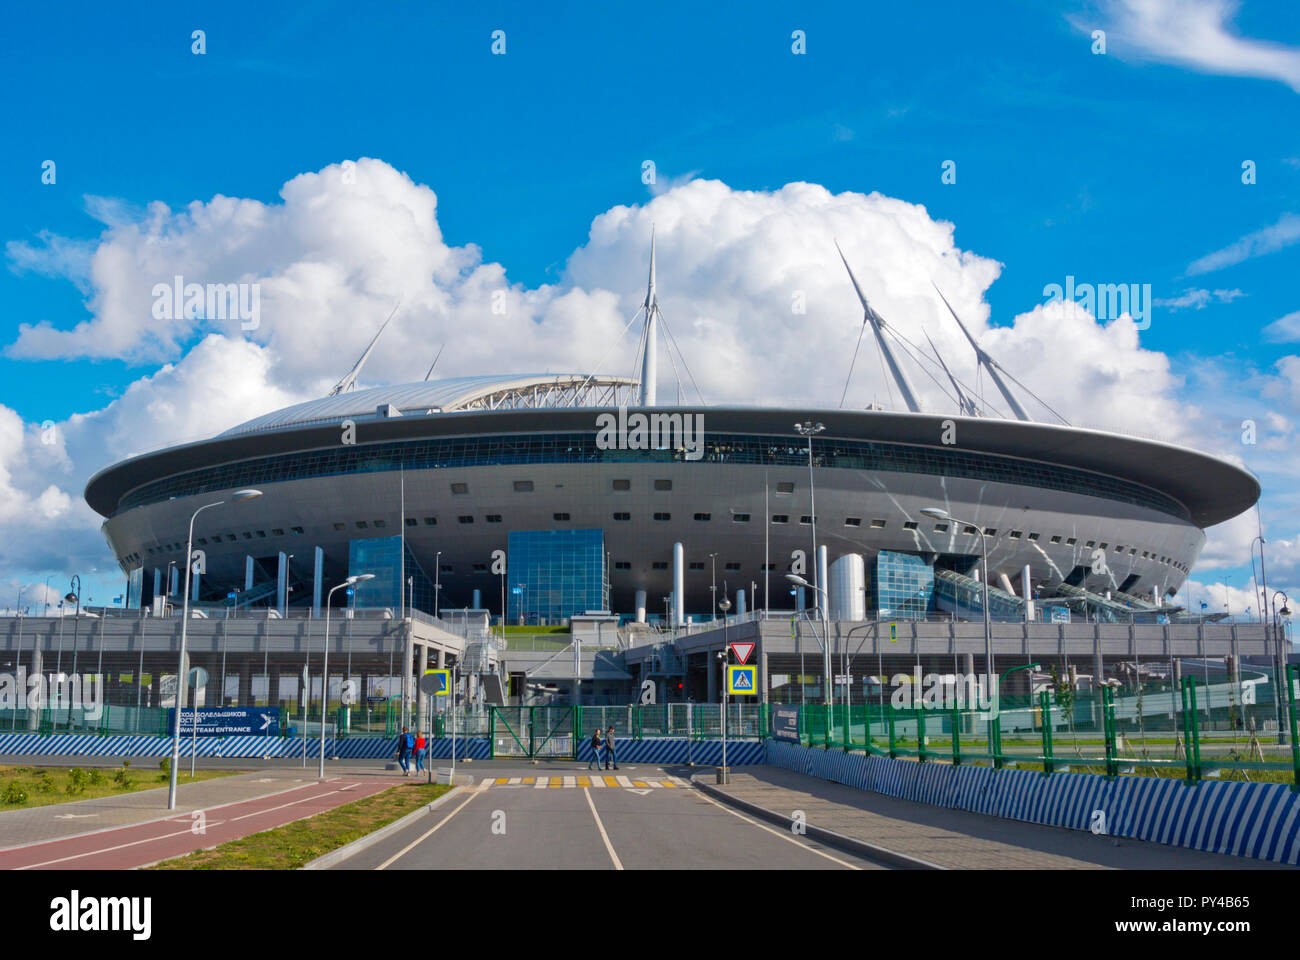 Krestovsky Stadium, San Pietroburgo Stadium, Krestovsky isola, San Pietroburgo, Russia Foto Stock